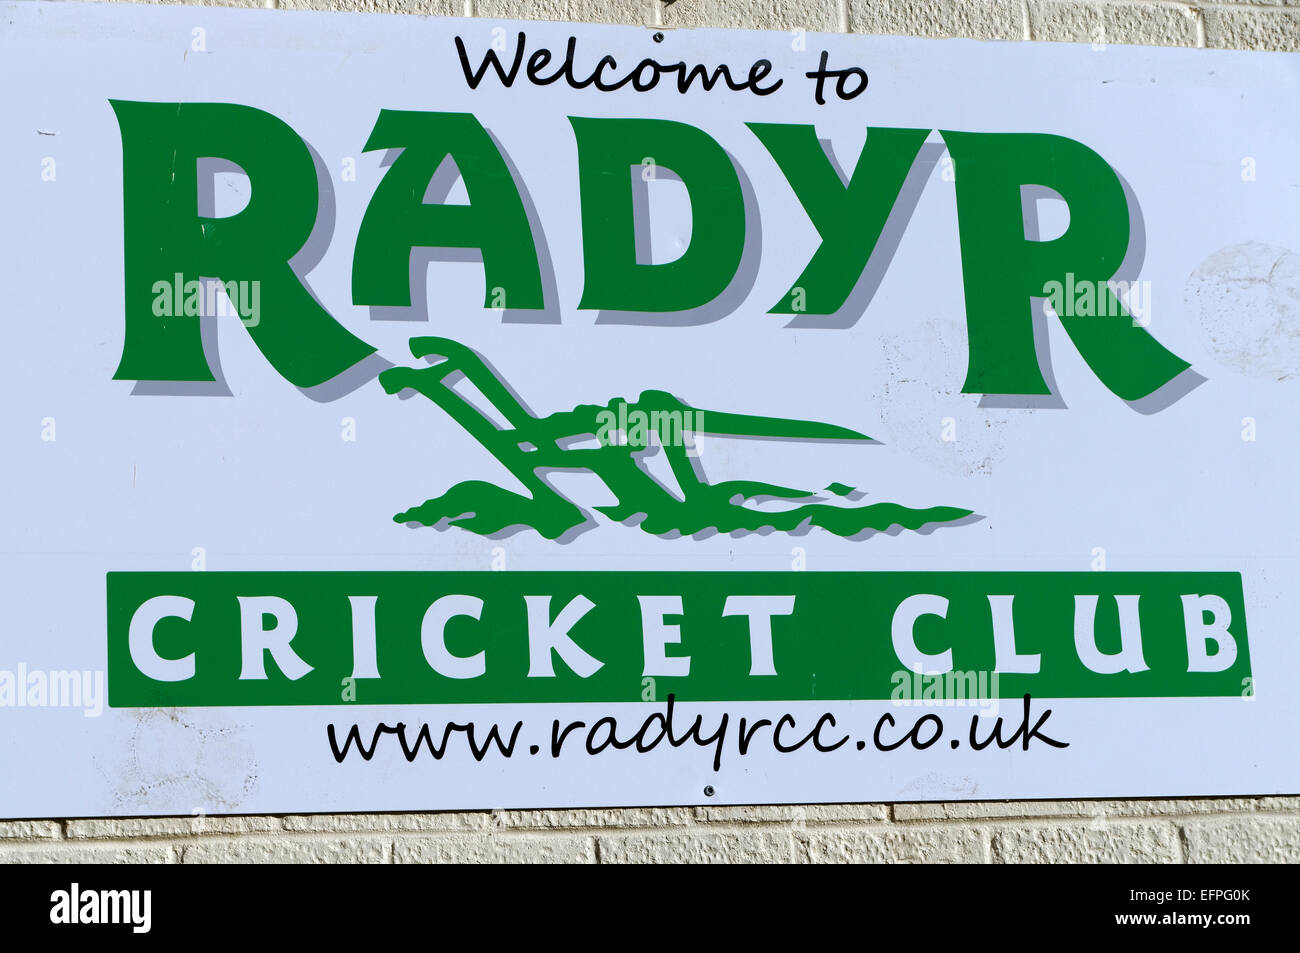 Radyr Cricket club sign, Radyr, Cardiff, Wales, UK. Stock Photo